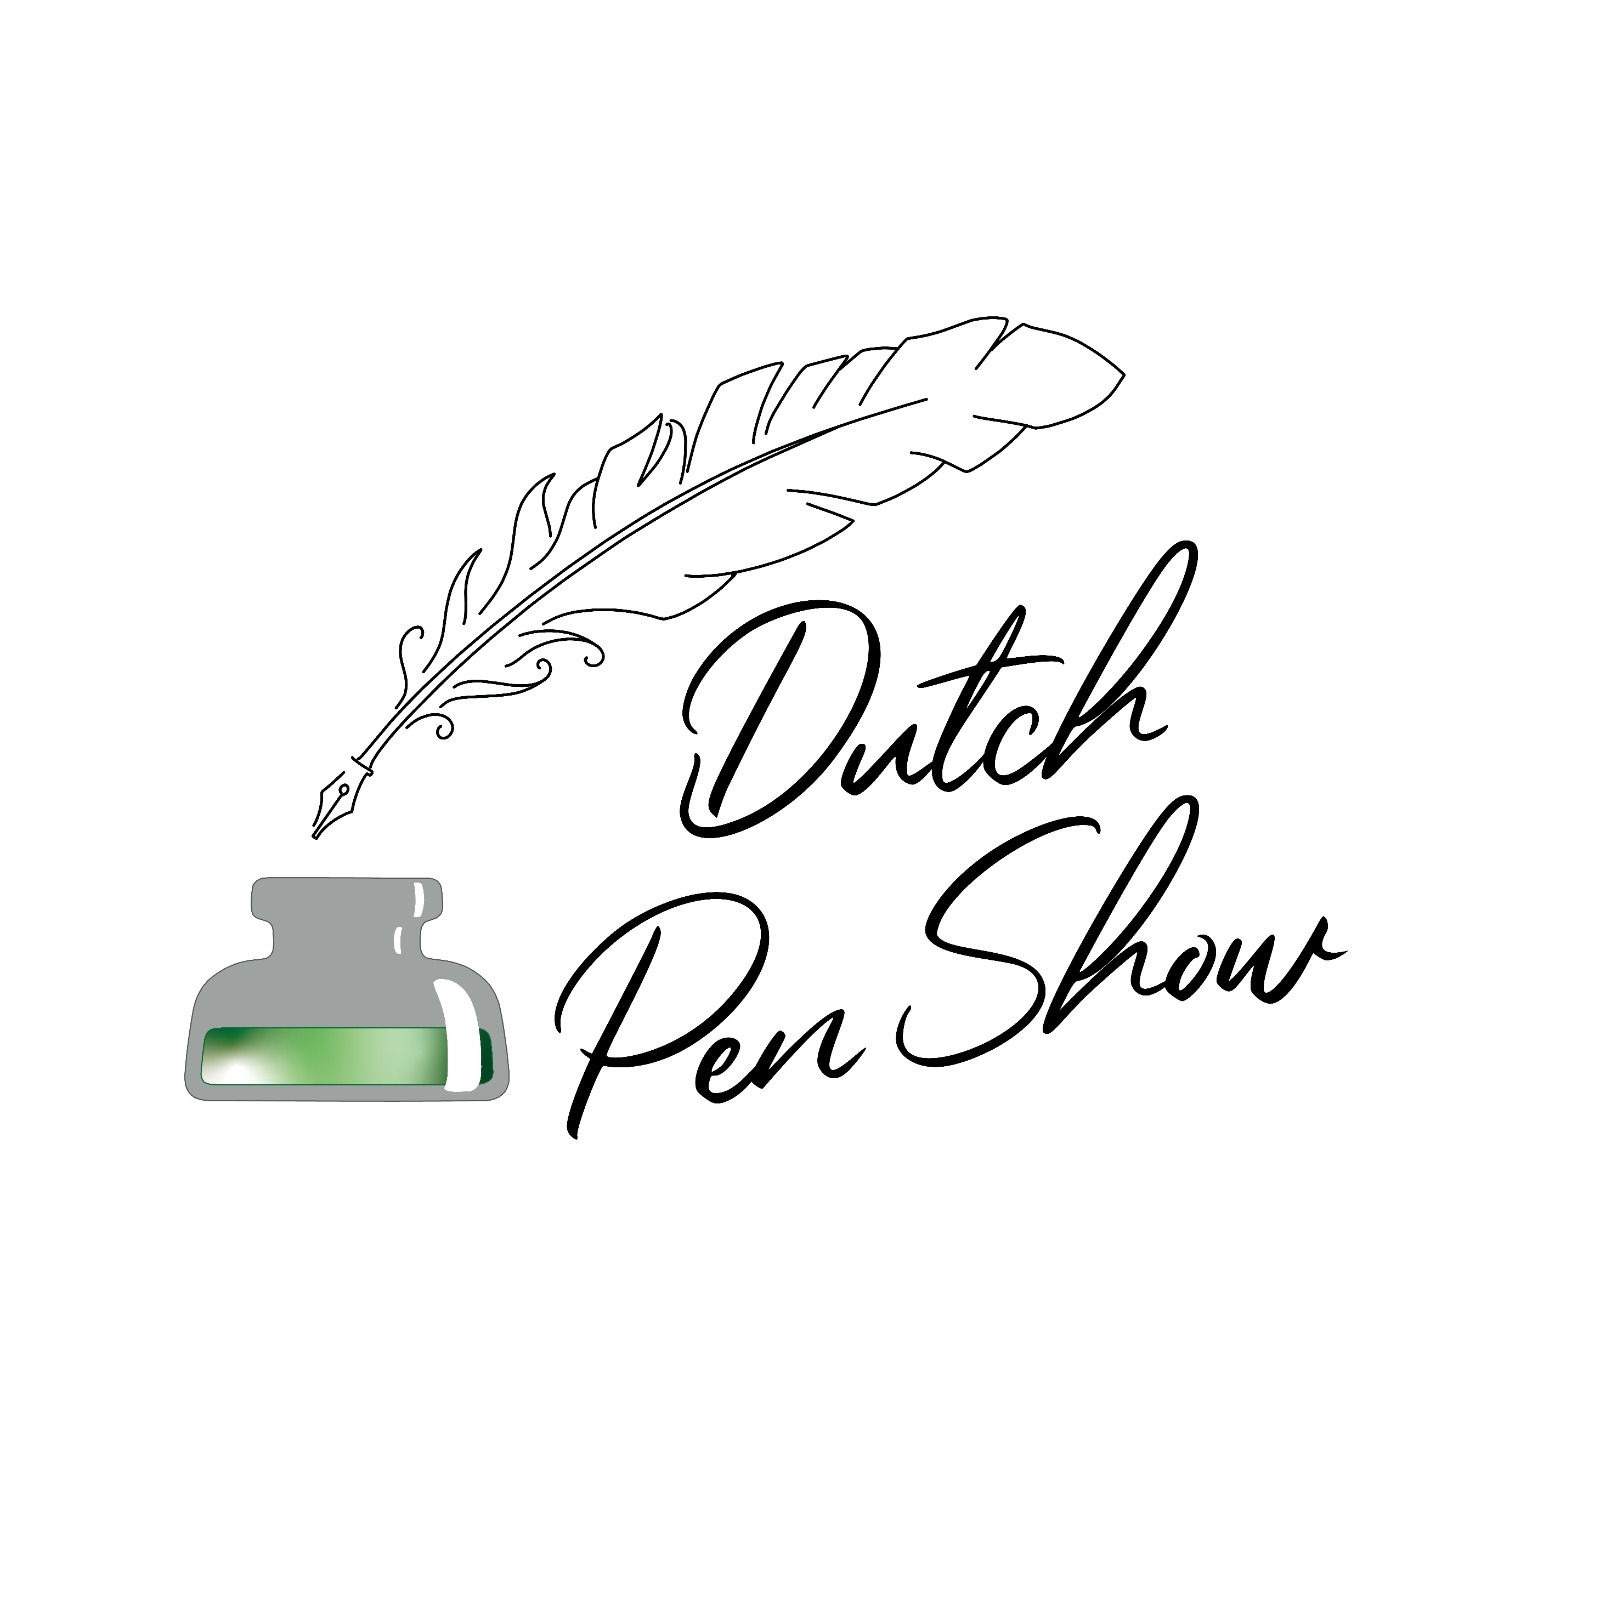 Dutch Pen Show